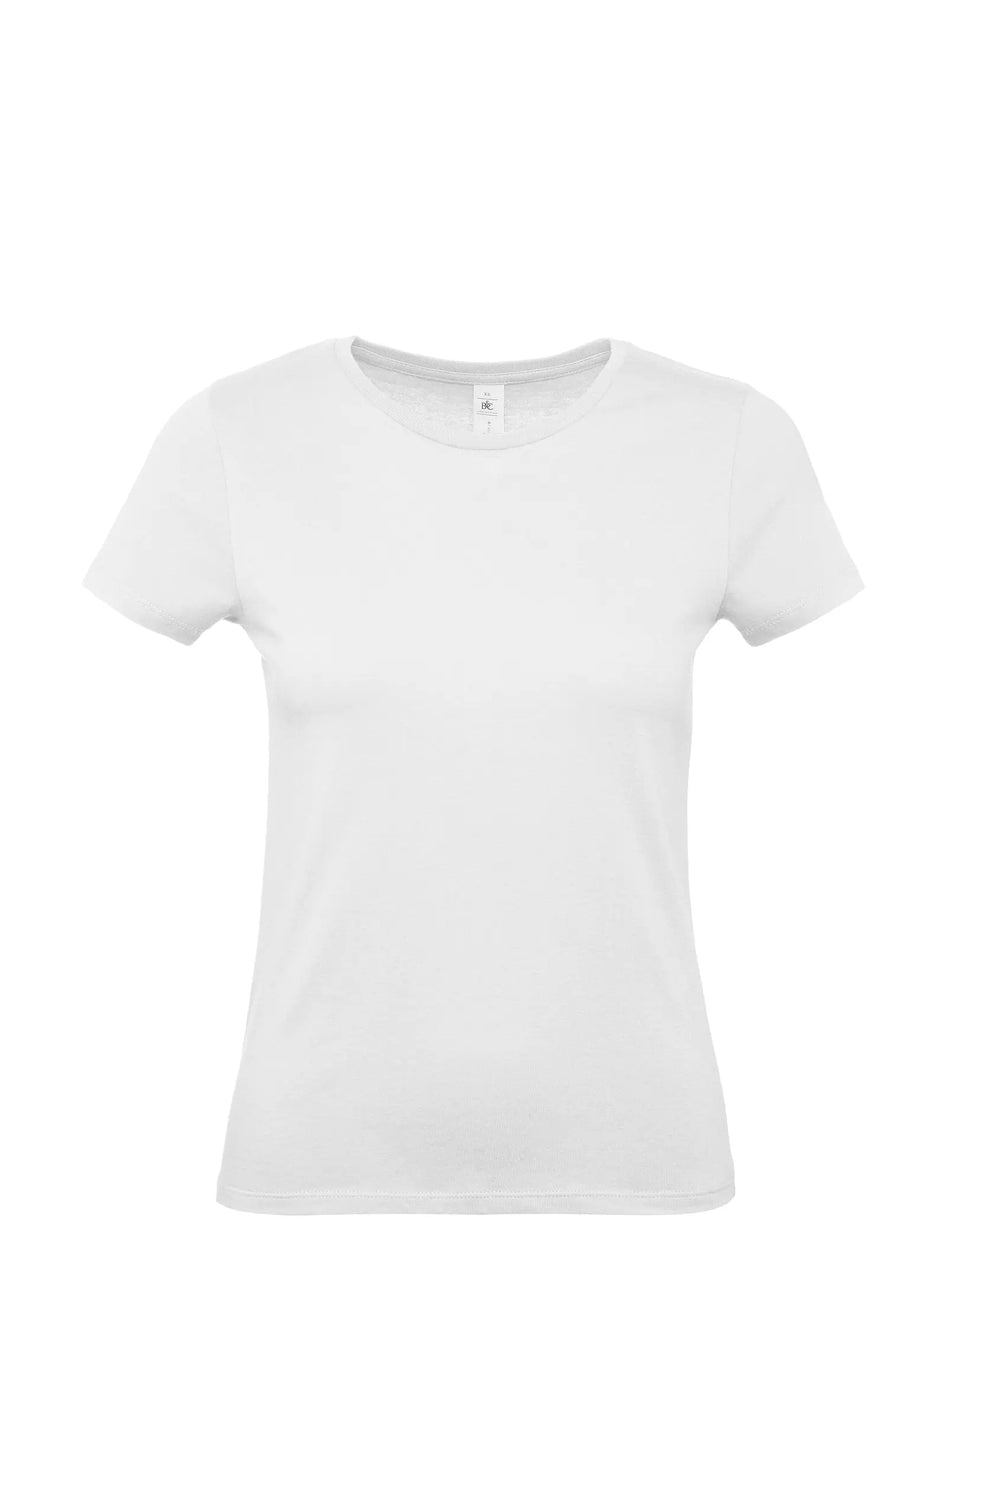 T-Shirt uomo B&C, 100% cotone, 145 grammi, colore bianco, personalizzabile con logo o testo